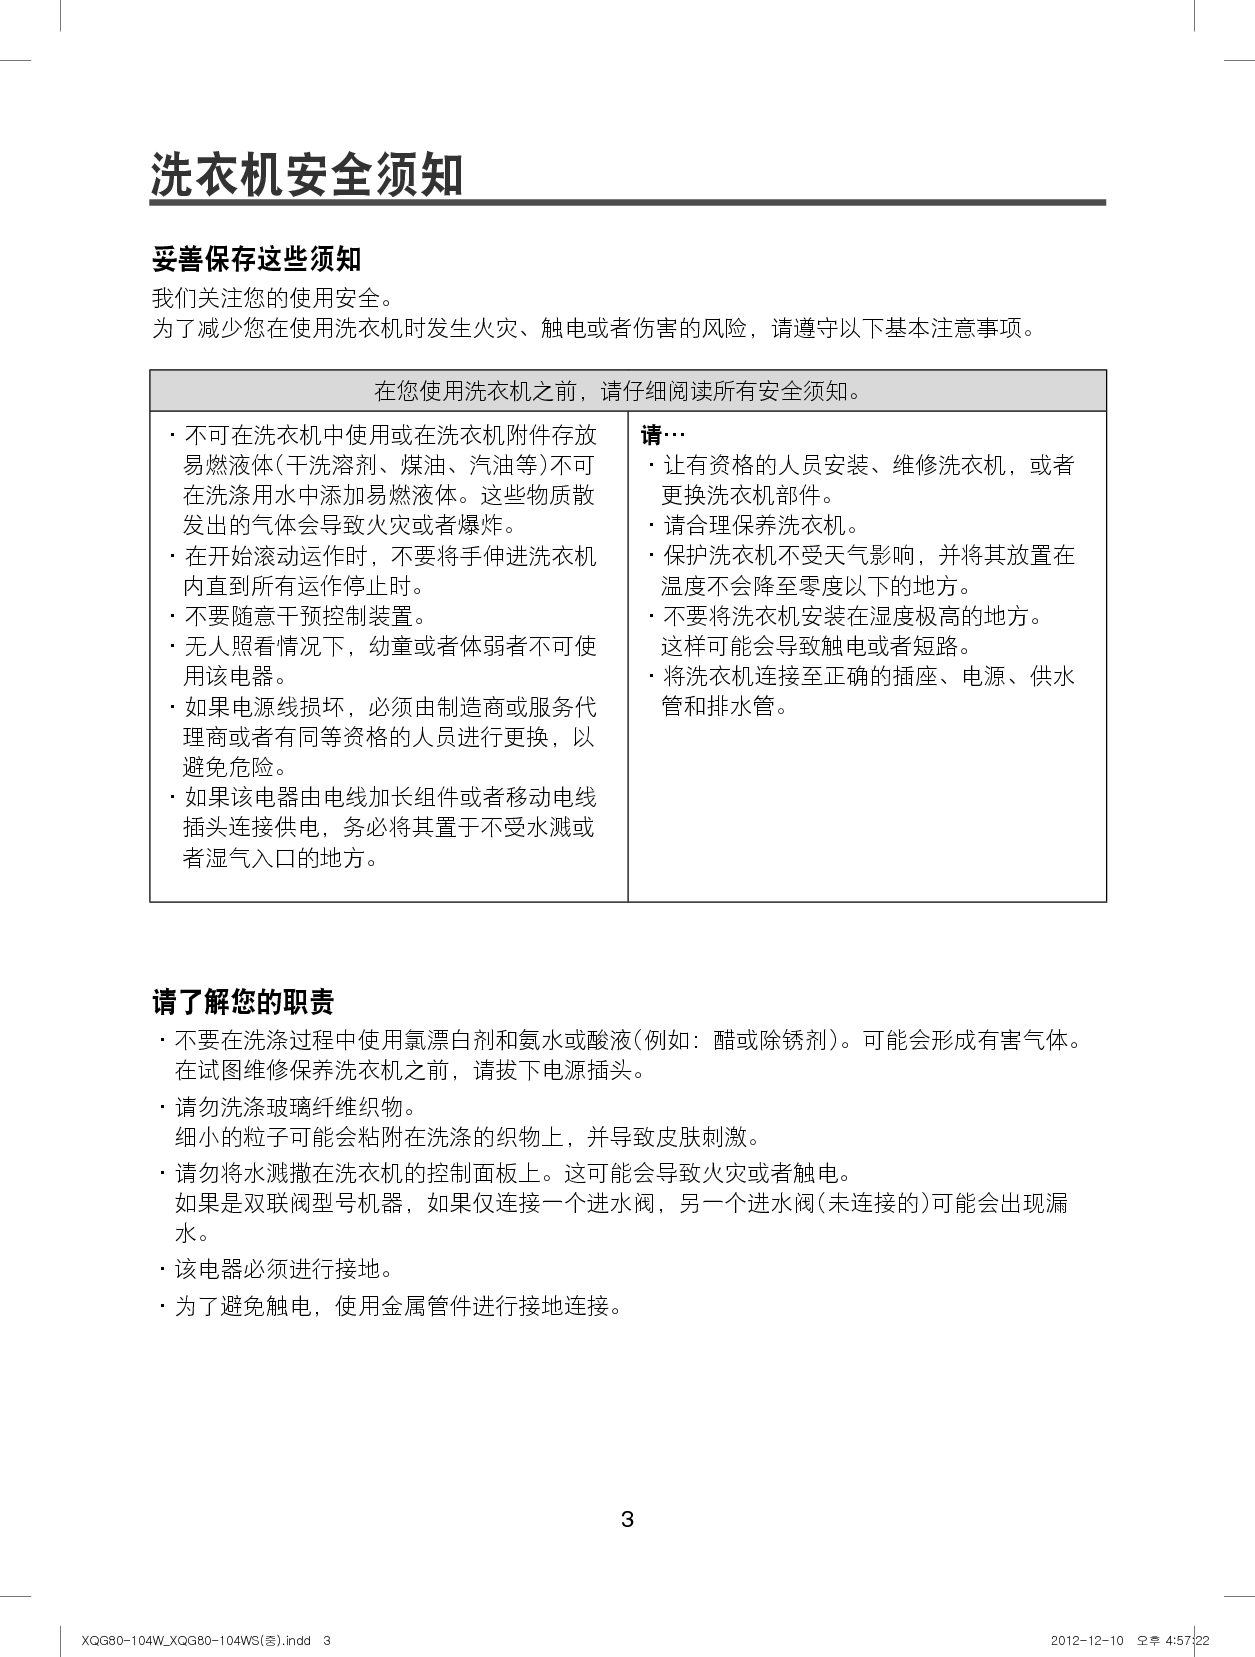 大宇 DAEWOO XQG80-104W 用户手册 第2页